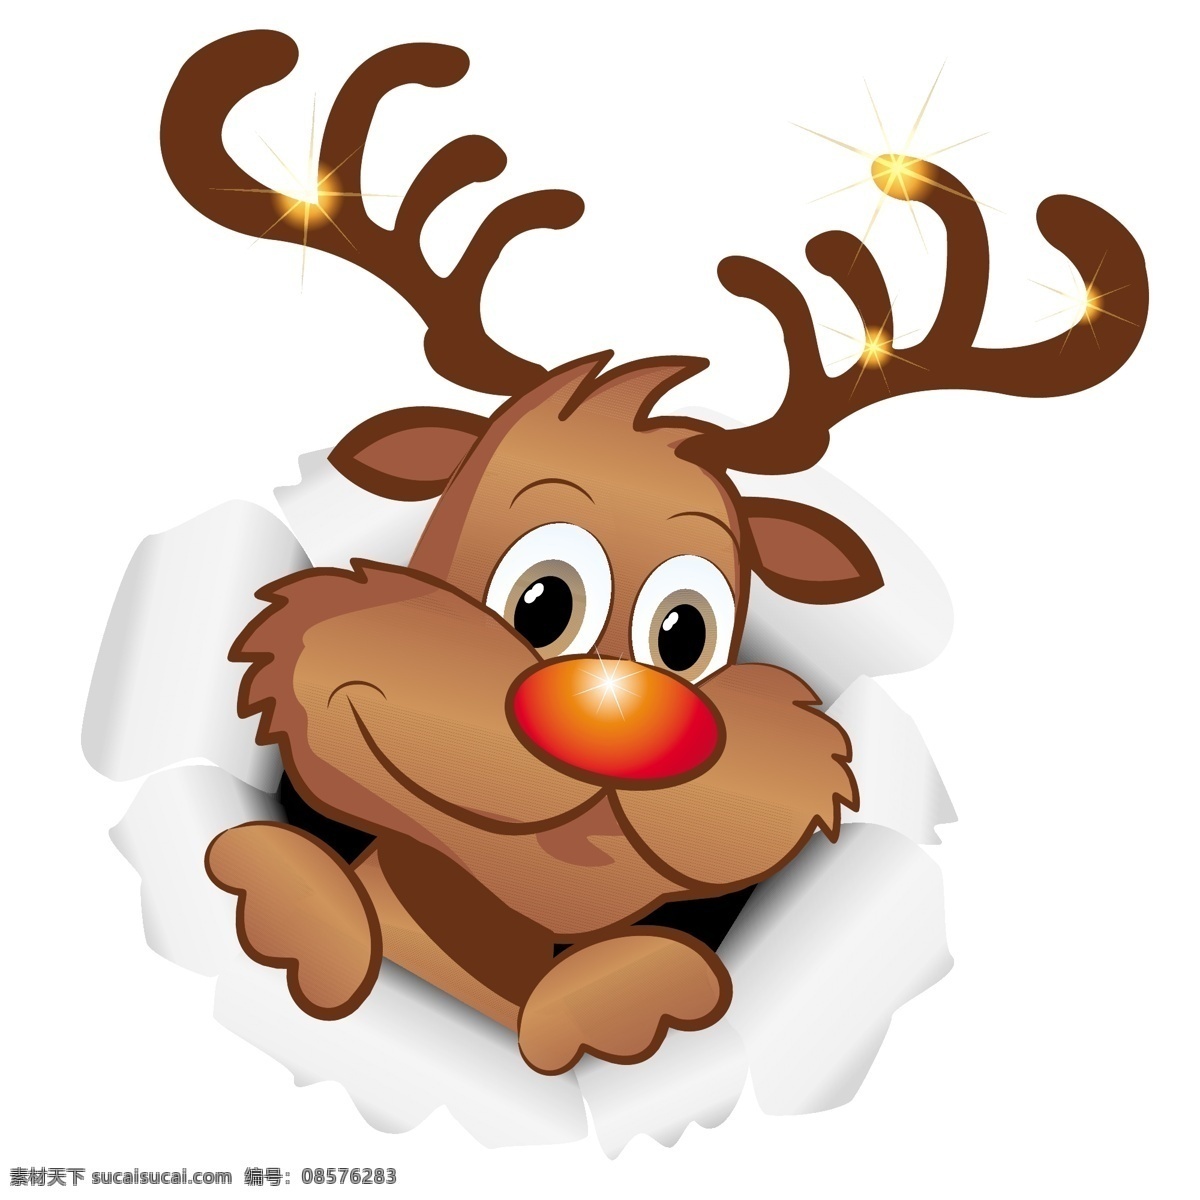 插画 冬季 节日素材 卡通 卡通圣诞麋鹿 圣诞 麋鹿 矢量 可爱 模板下载 圣诞节 圣诞鹿 矢量素材 元素 淘宝素材 淘宝冬季促销